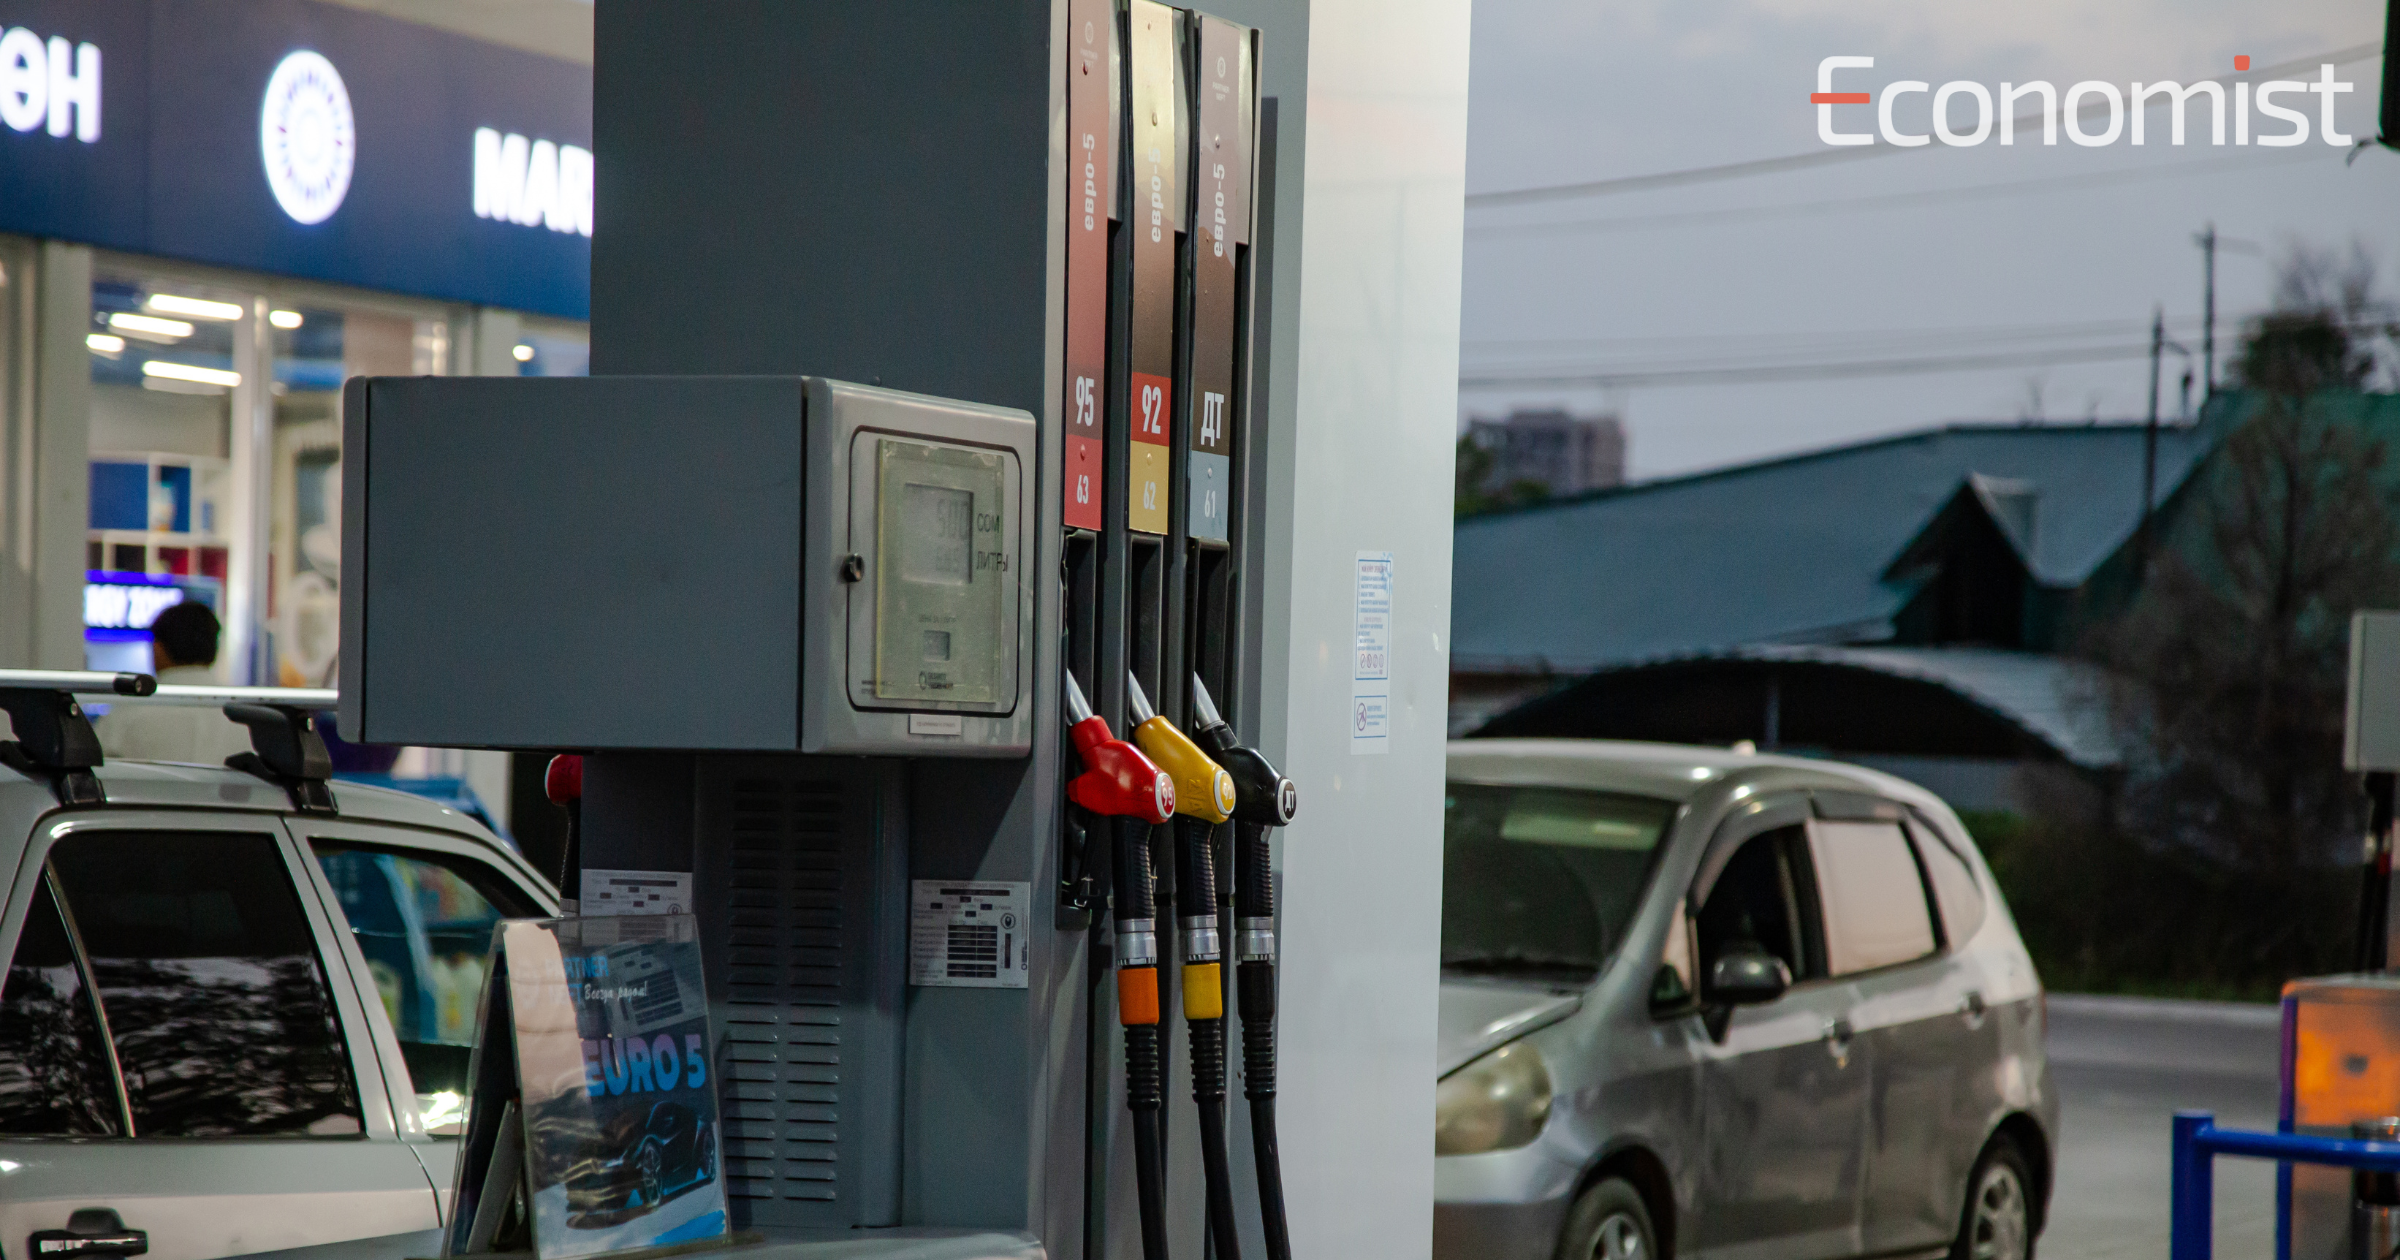 Кыргызстан вошел в топ-25 стран с самыми дешевыми ценами на бензин и дизель